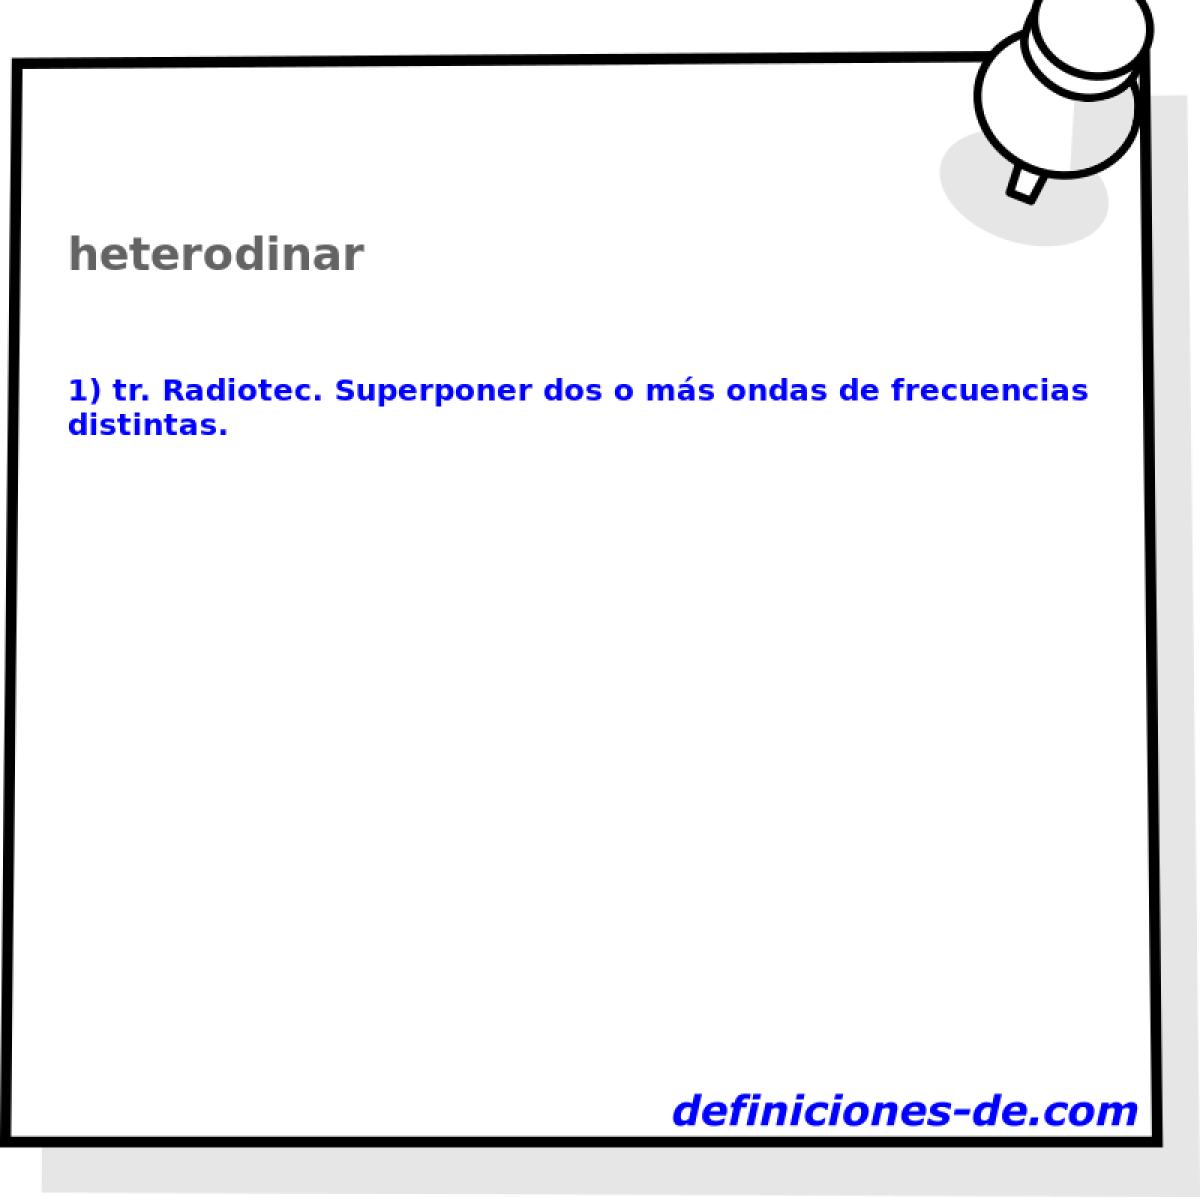 heterodinar 